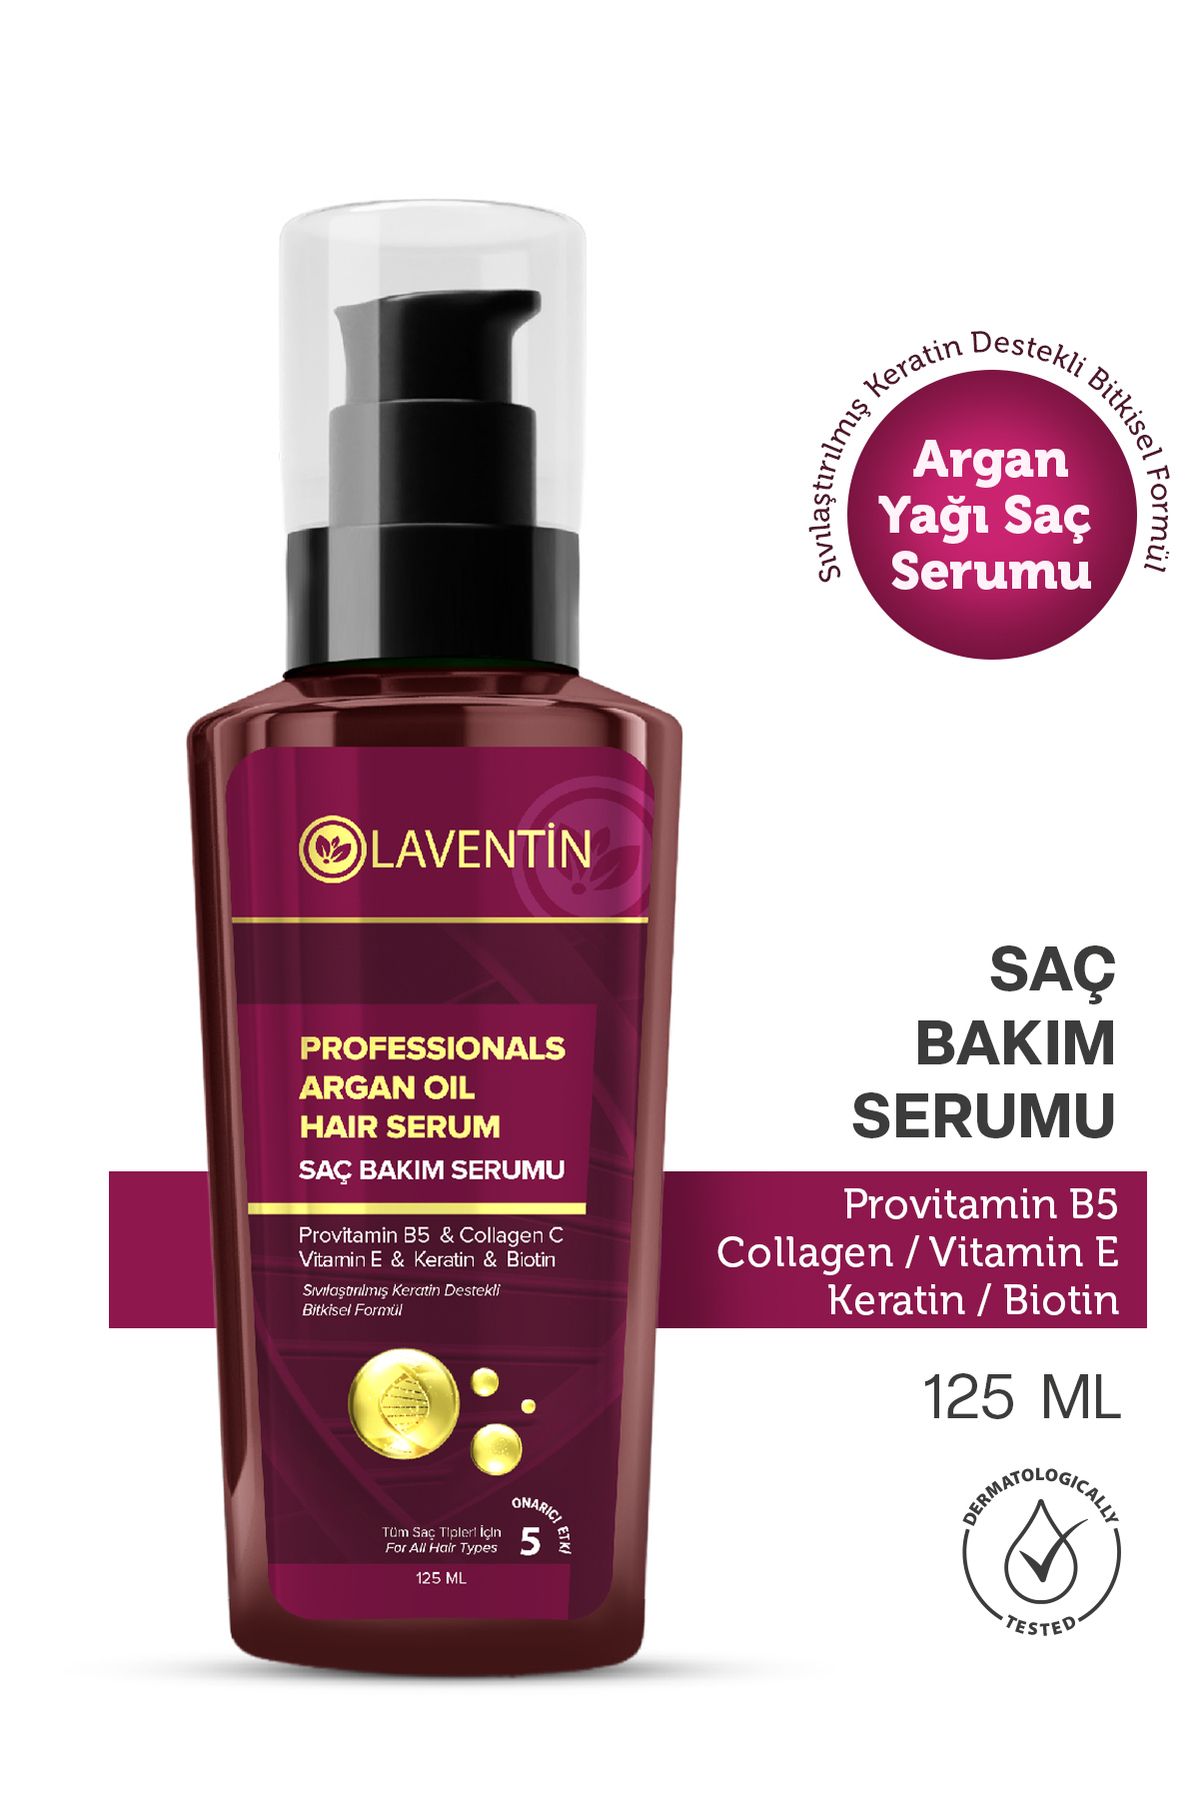 Laventin Saç Uzatıcı,dökülme Karşıtı, Keratin Biotin Collagen Argan Yağlı Saç Serumu 125ml